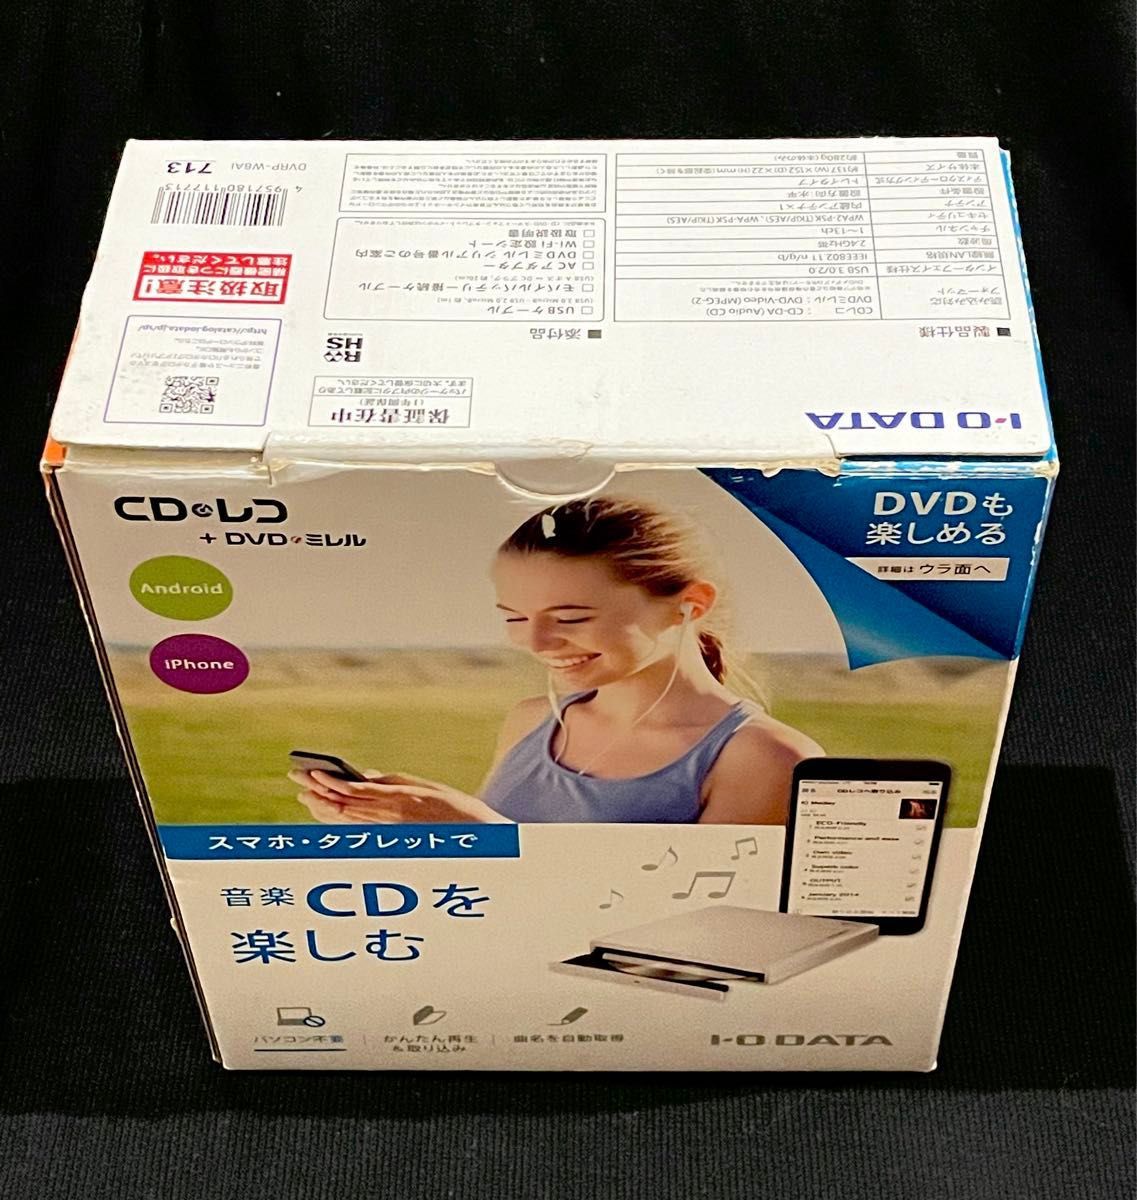 I-O DATA「DVDミレル+CDレコ」スマホ タブレット DVD視聴/CD取込 Wi-Fiモデル DVRP-W8AI